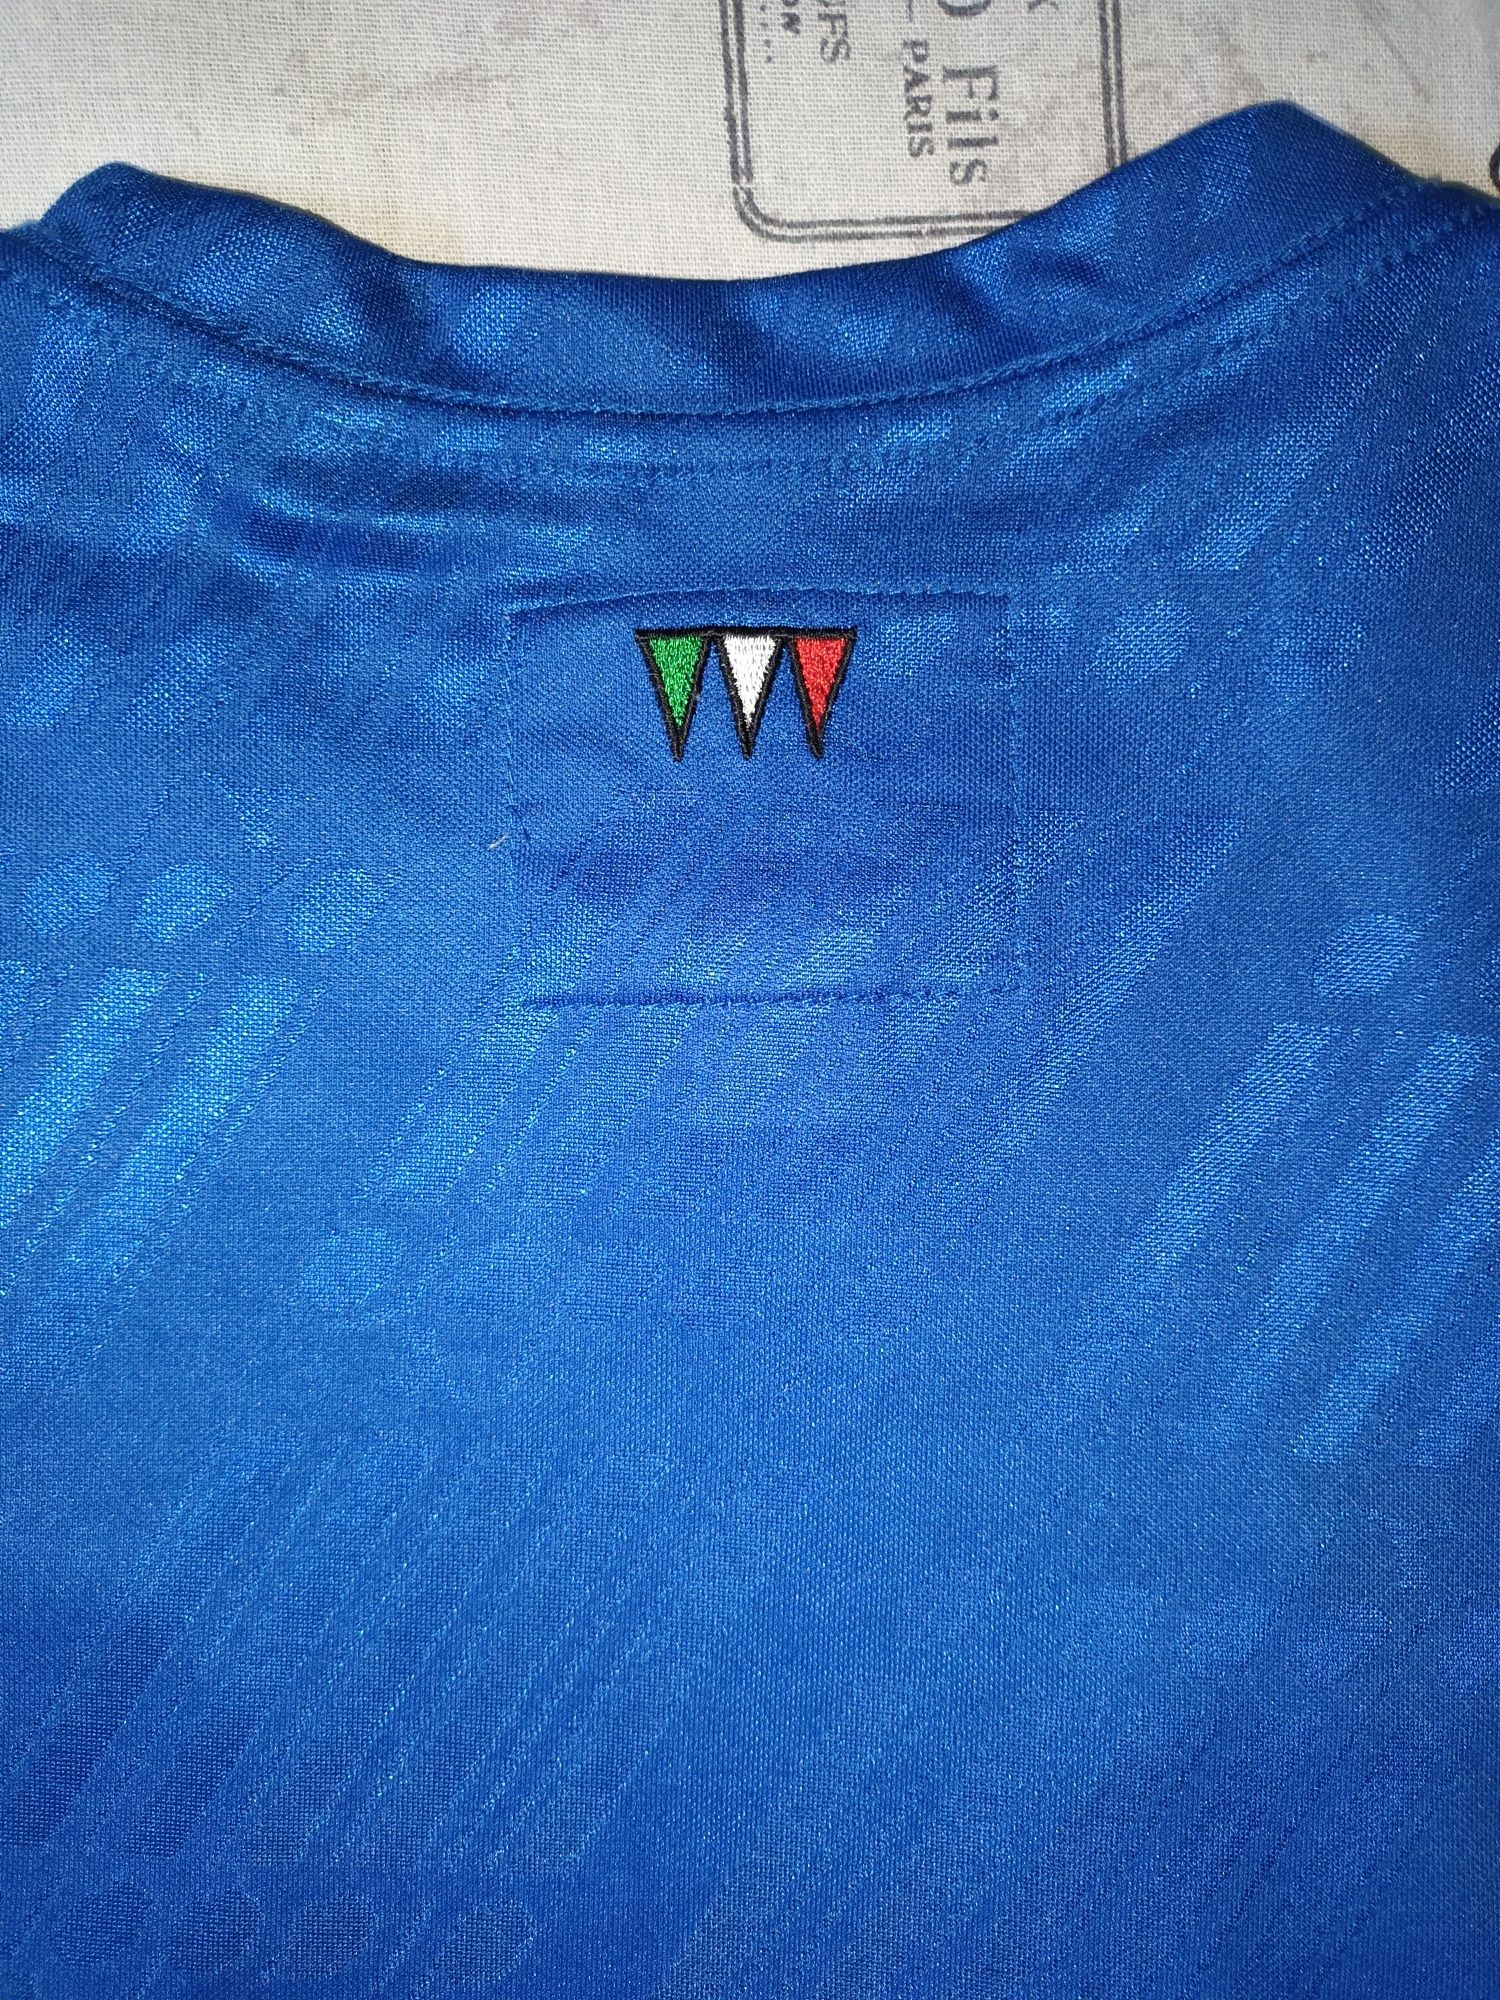 Оригинална тениска на Италия, Diadora, размер М